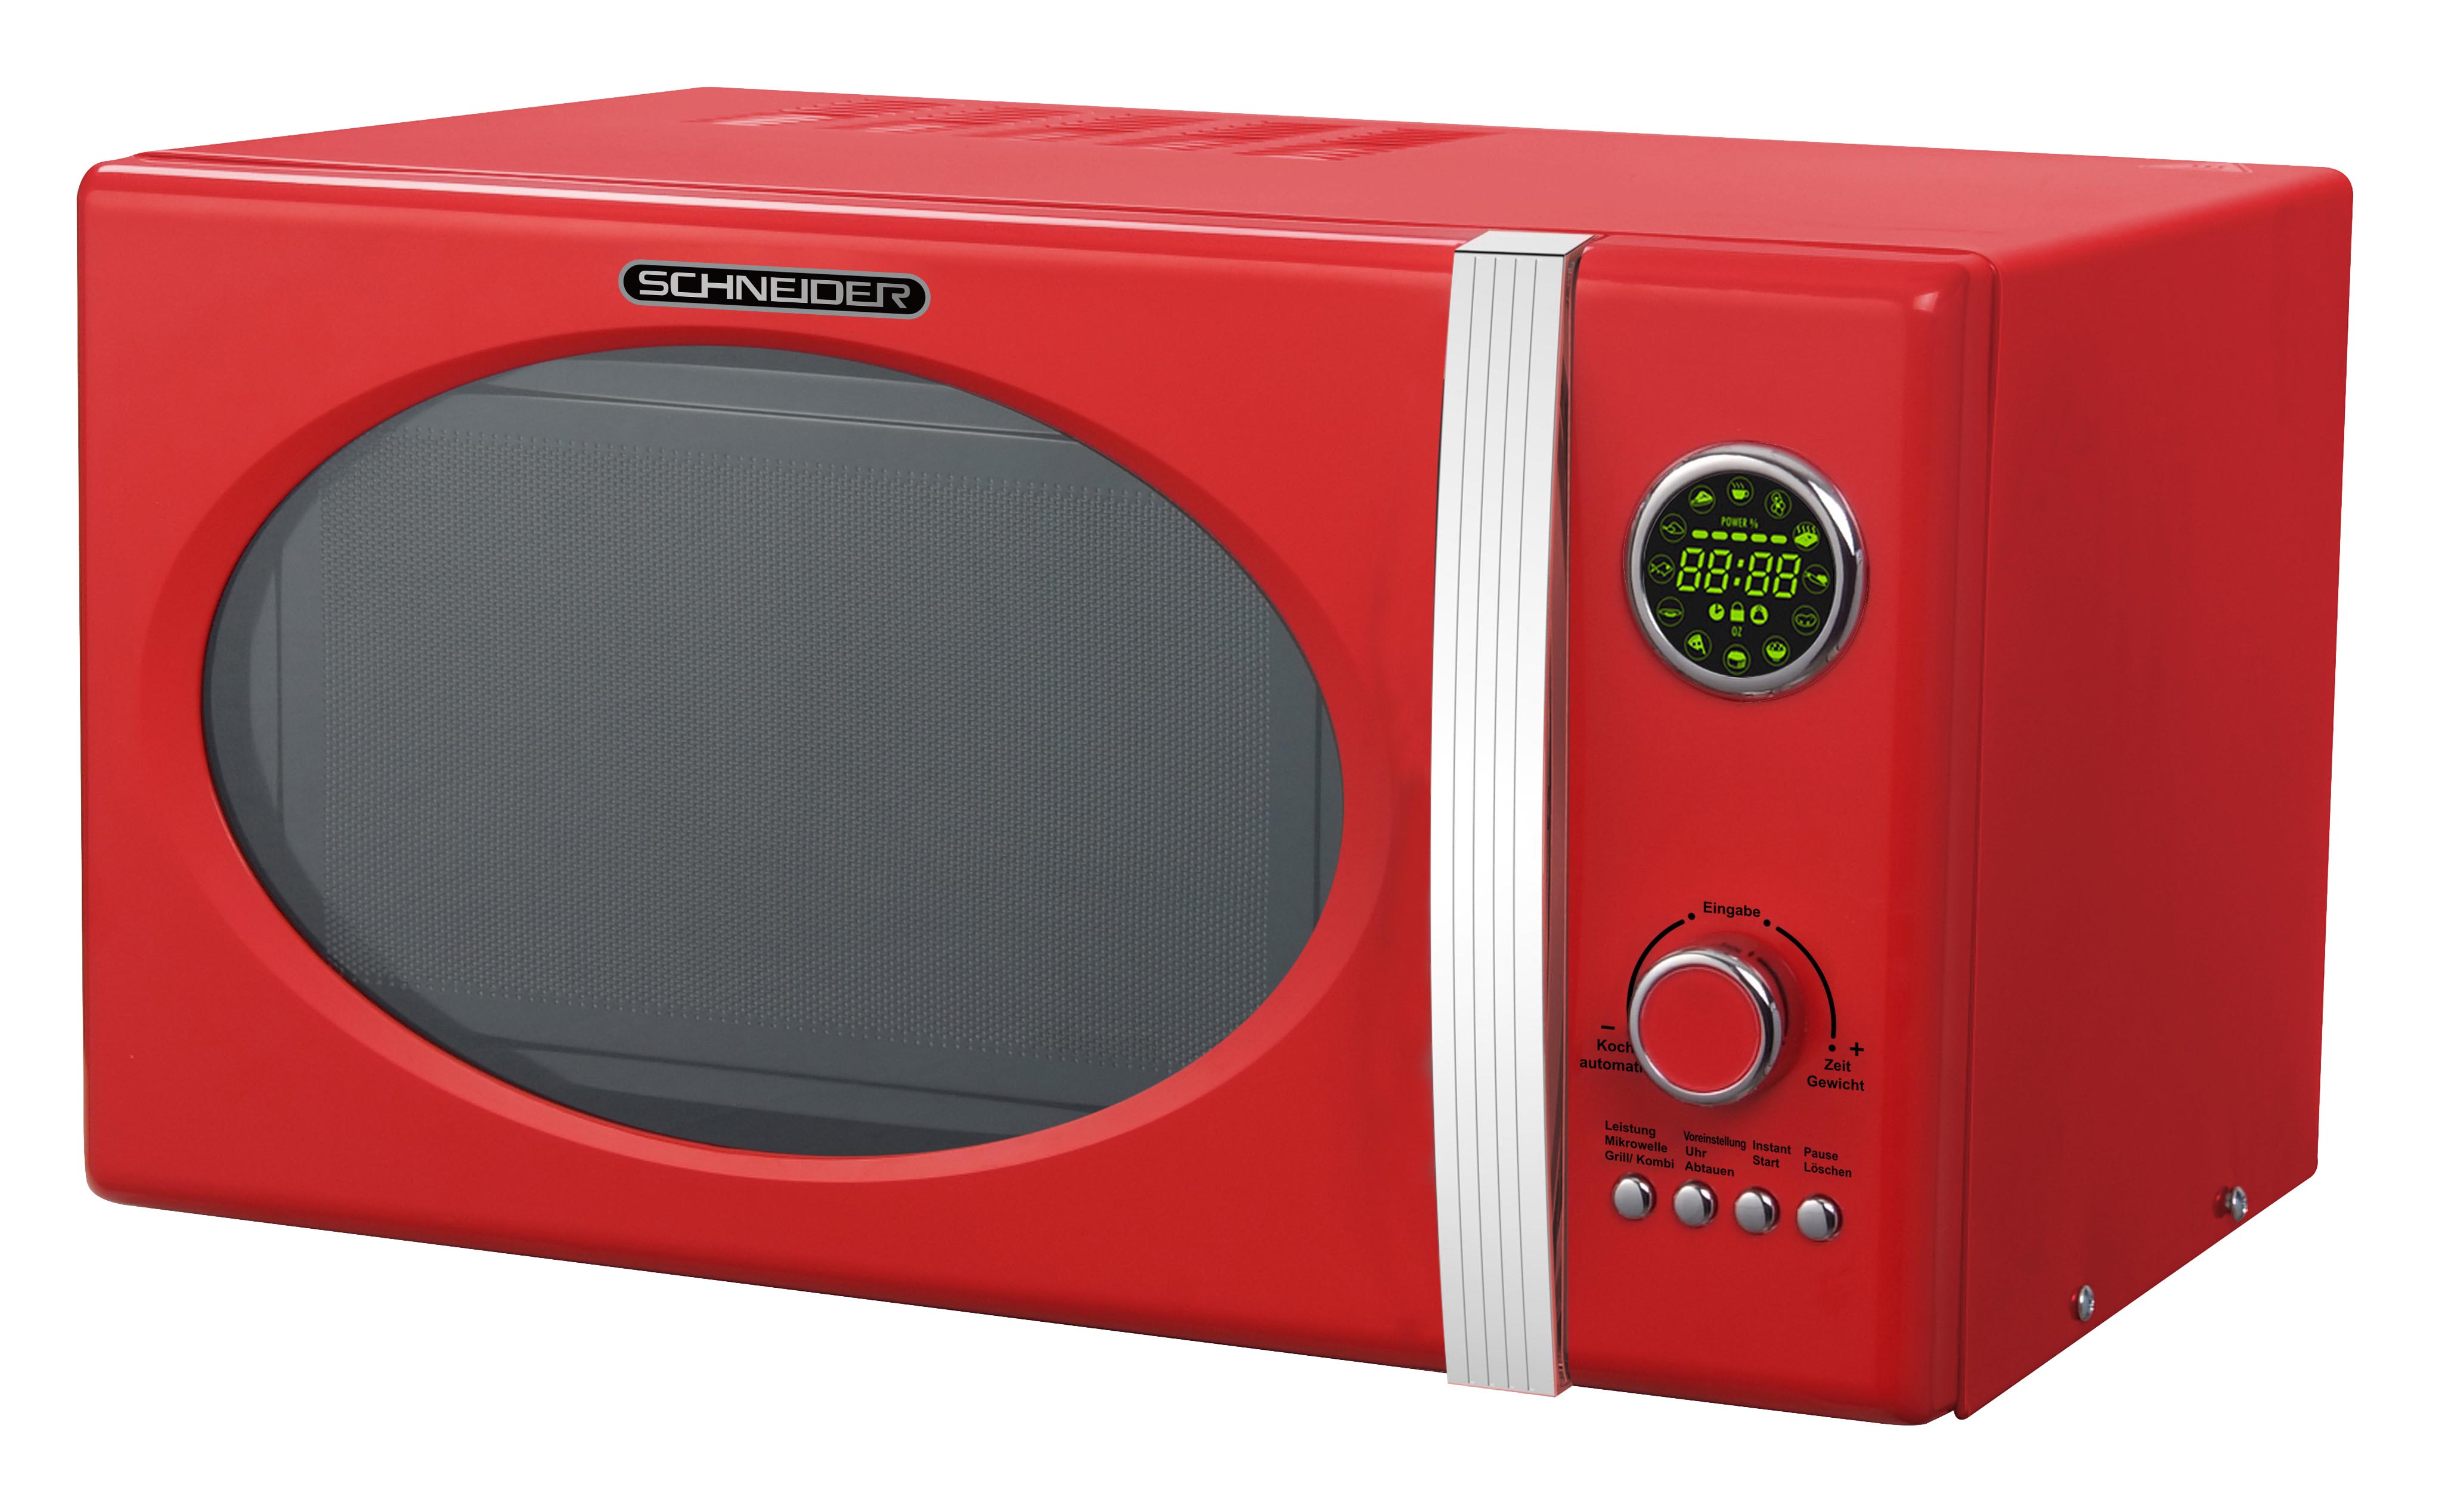 Retro Microwave oven  SCHNEIDER MW823G FR, ferrari red